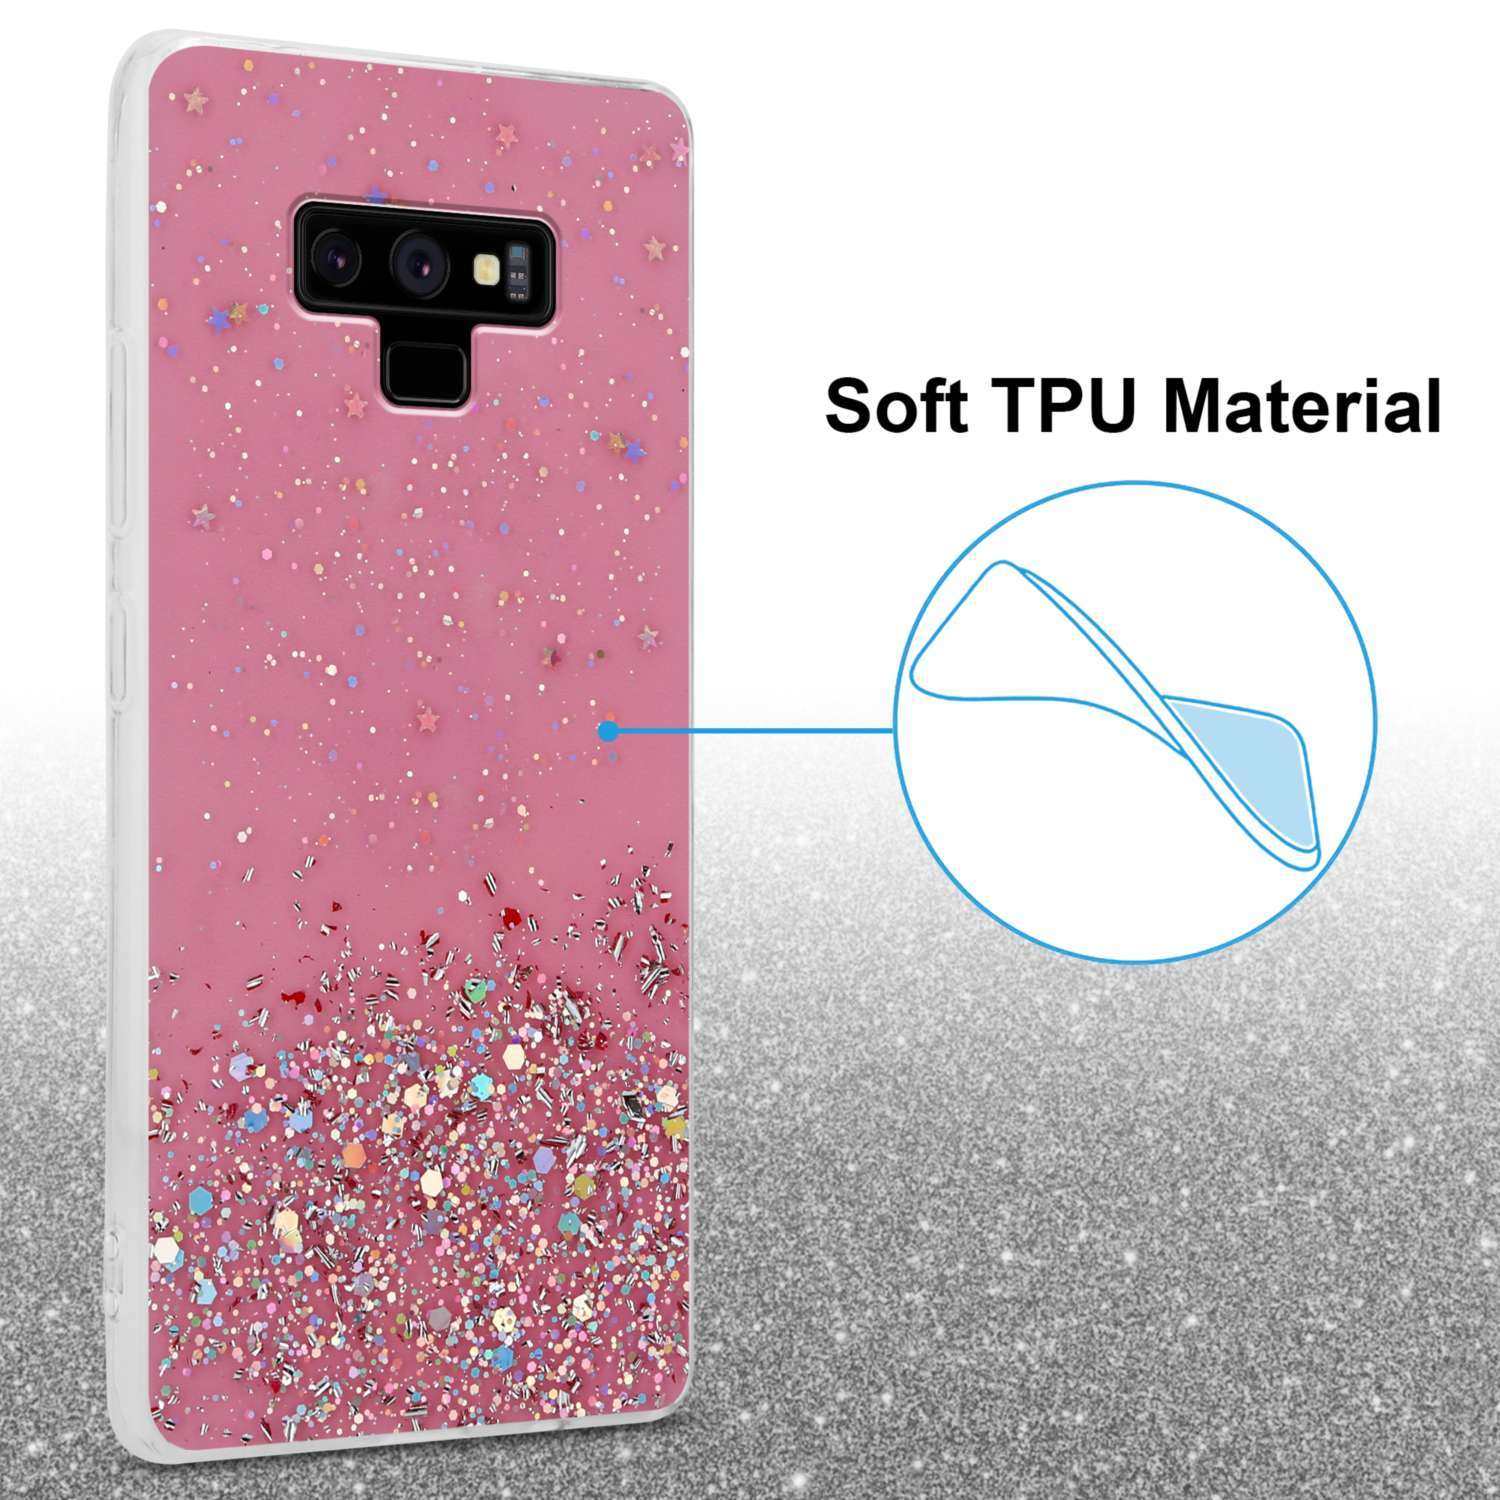 CADORABO Schutzhülle mit funkelnden Glitter, NOTE 9, Rosa Backcover, Glitter Galaxy mit Samsung